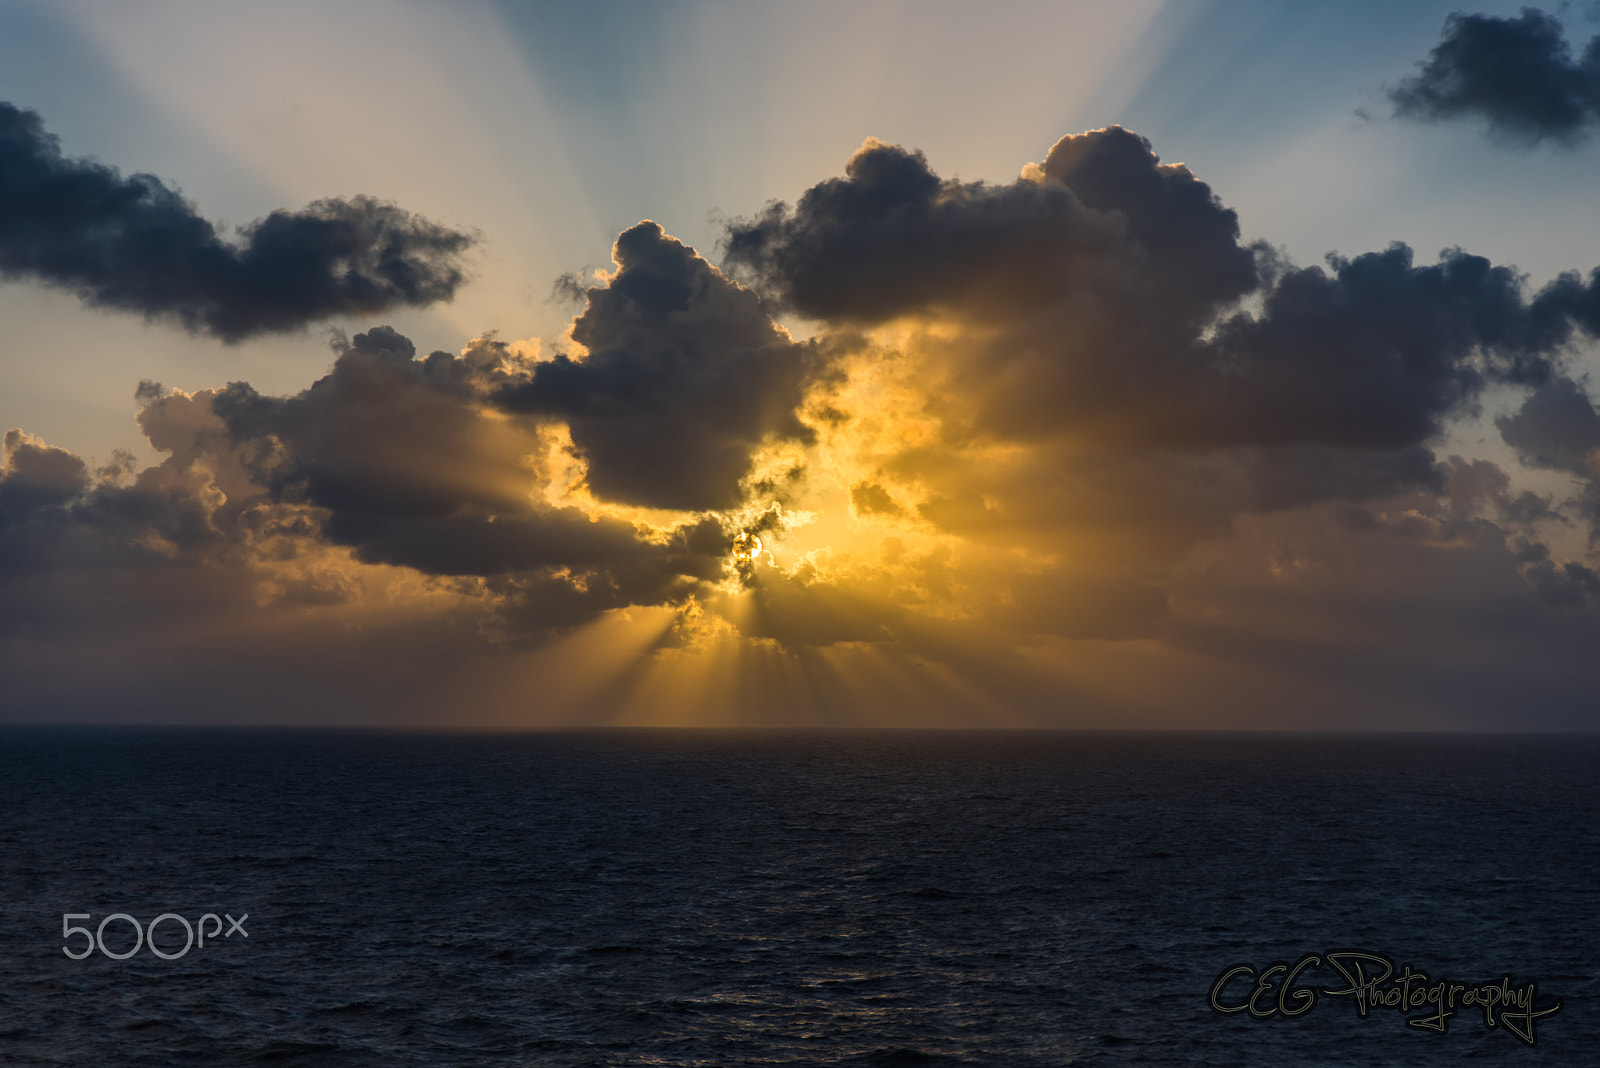 Nikon D810 sample photo. Sunrise on the ocean photography